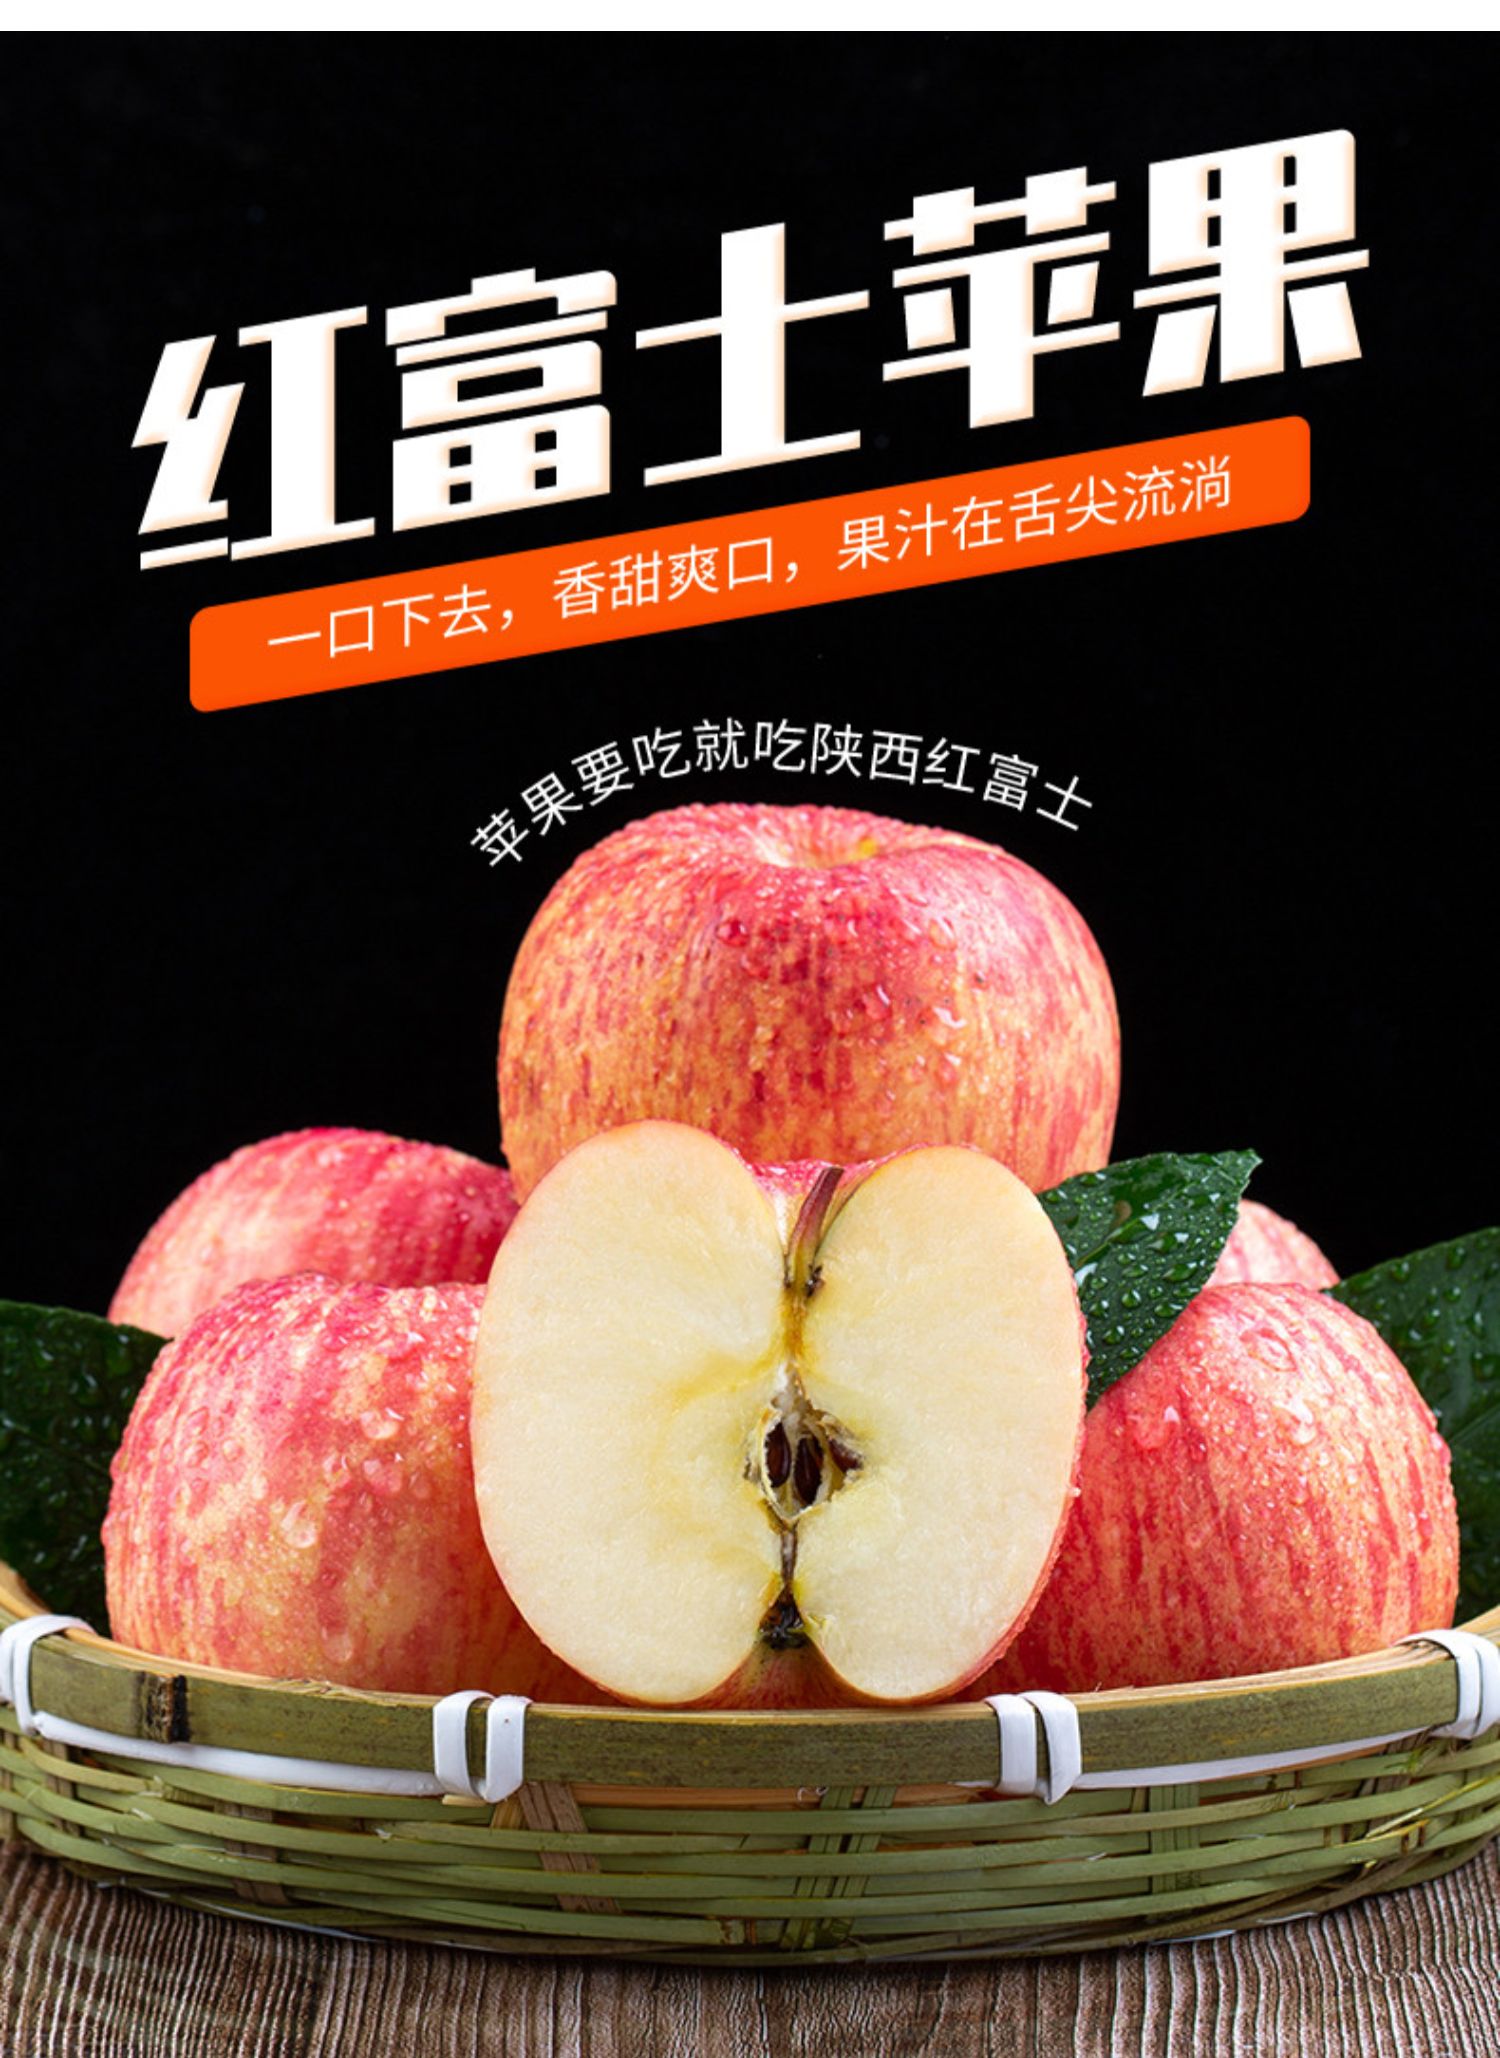 红富士苹果广告图图片